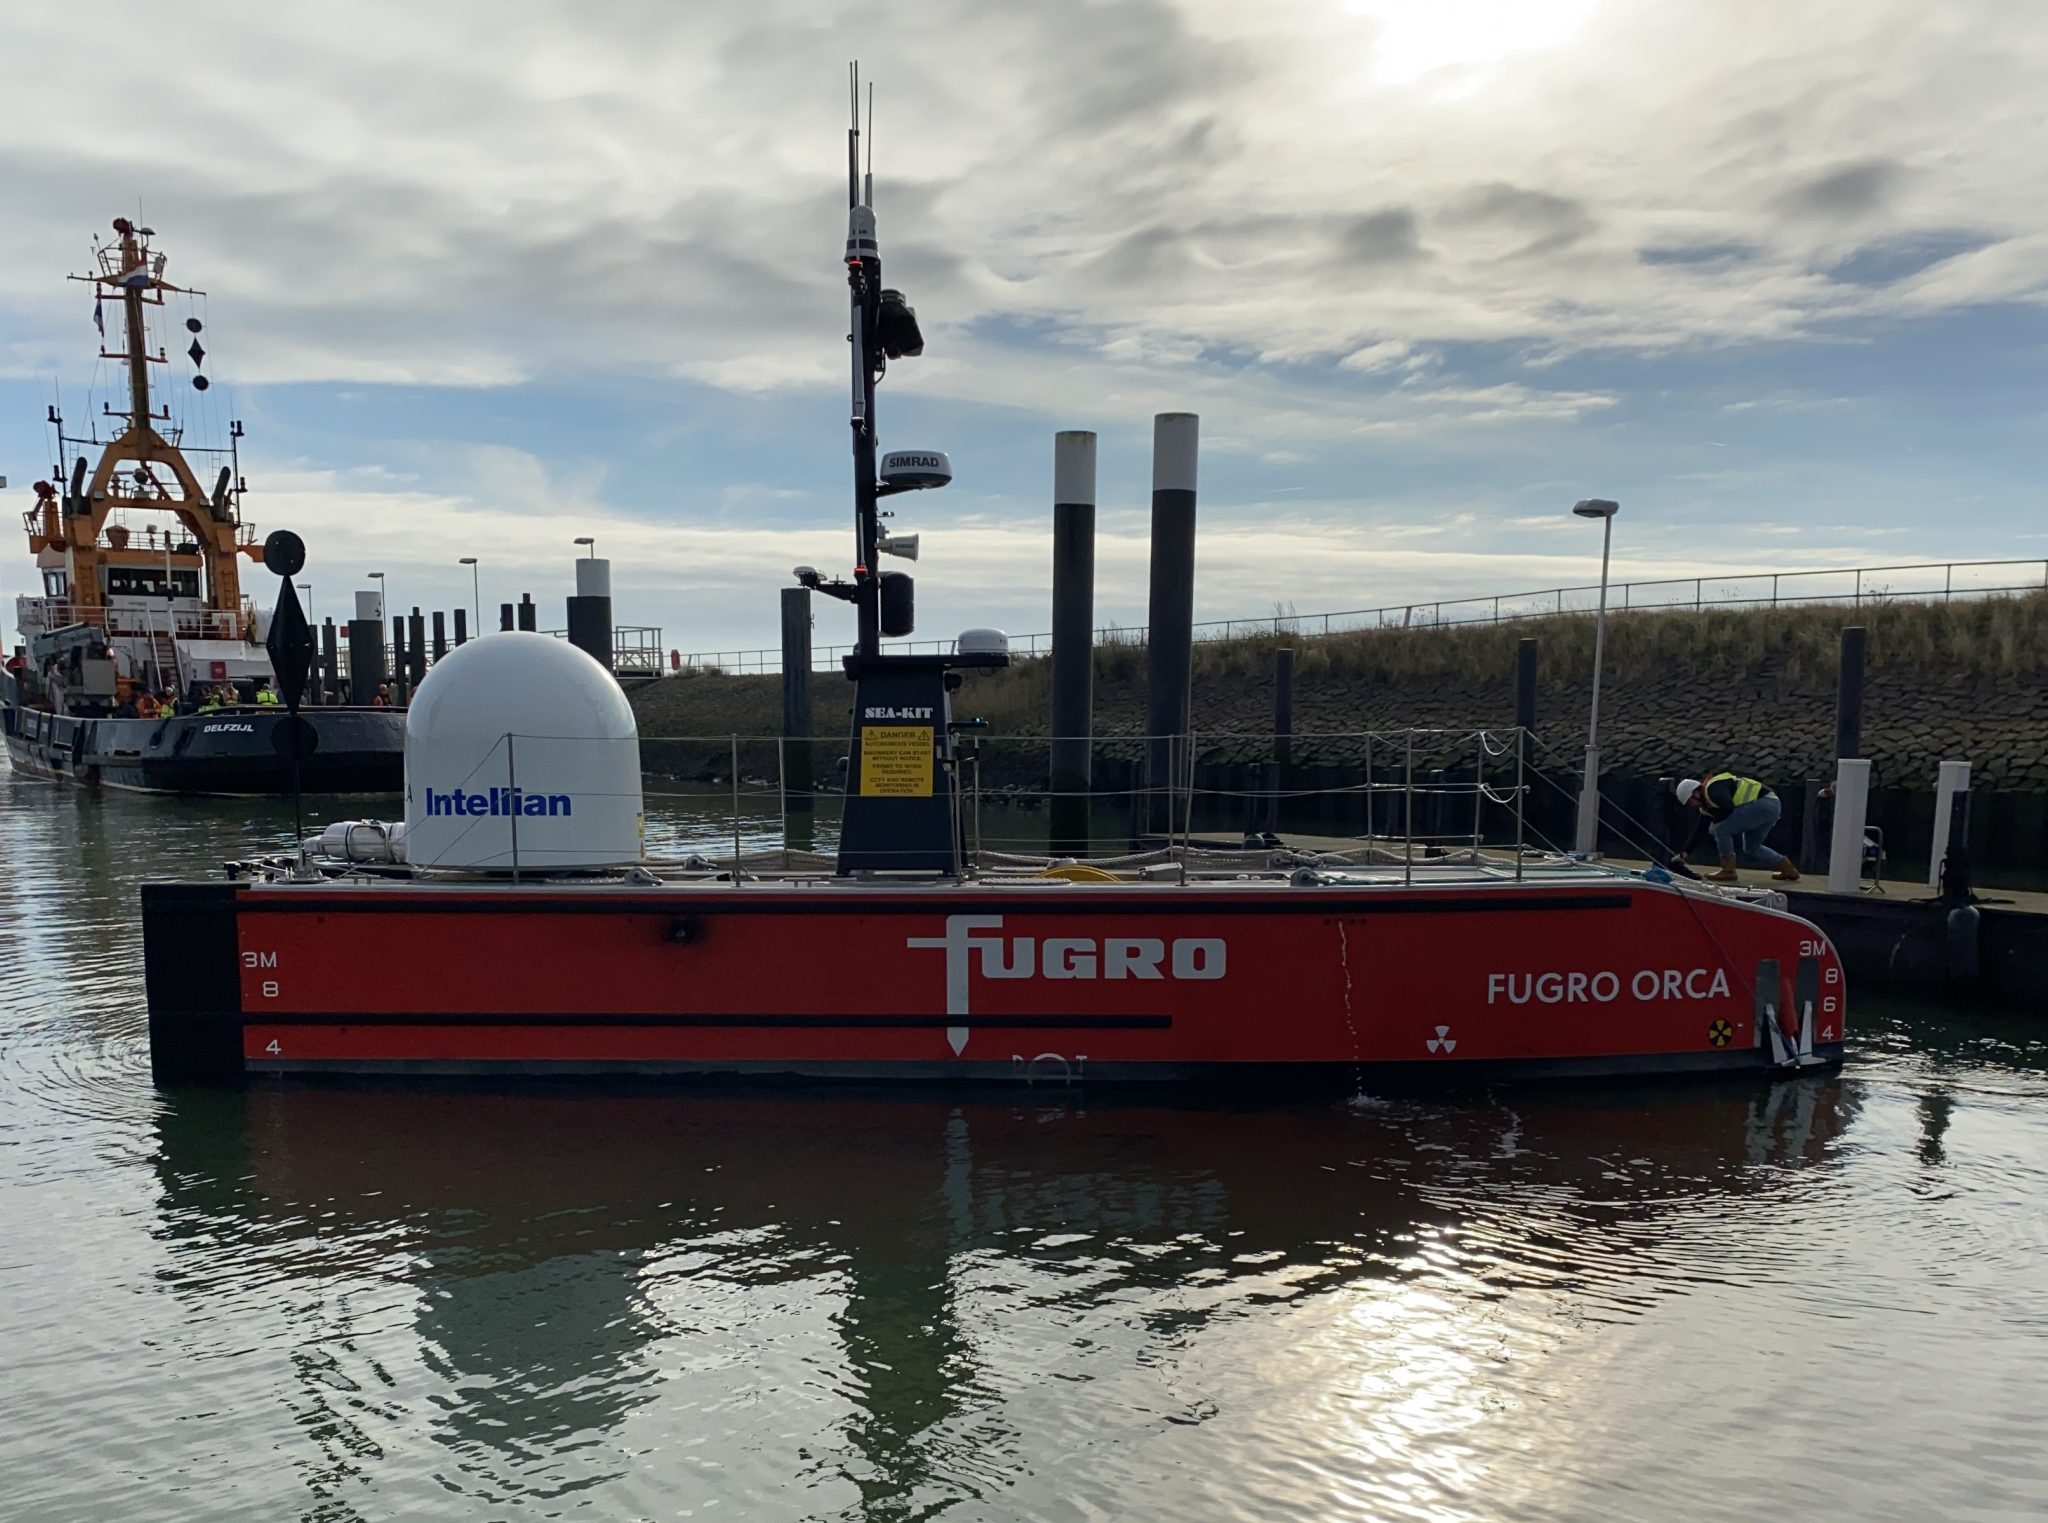 Fugro voert al zeebodem-inspecties uit op zee met de onbemande Fugro Orca. (Foto Jelmer Bastiaans)